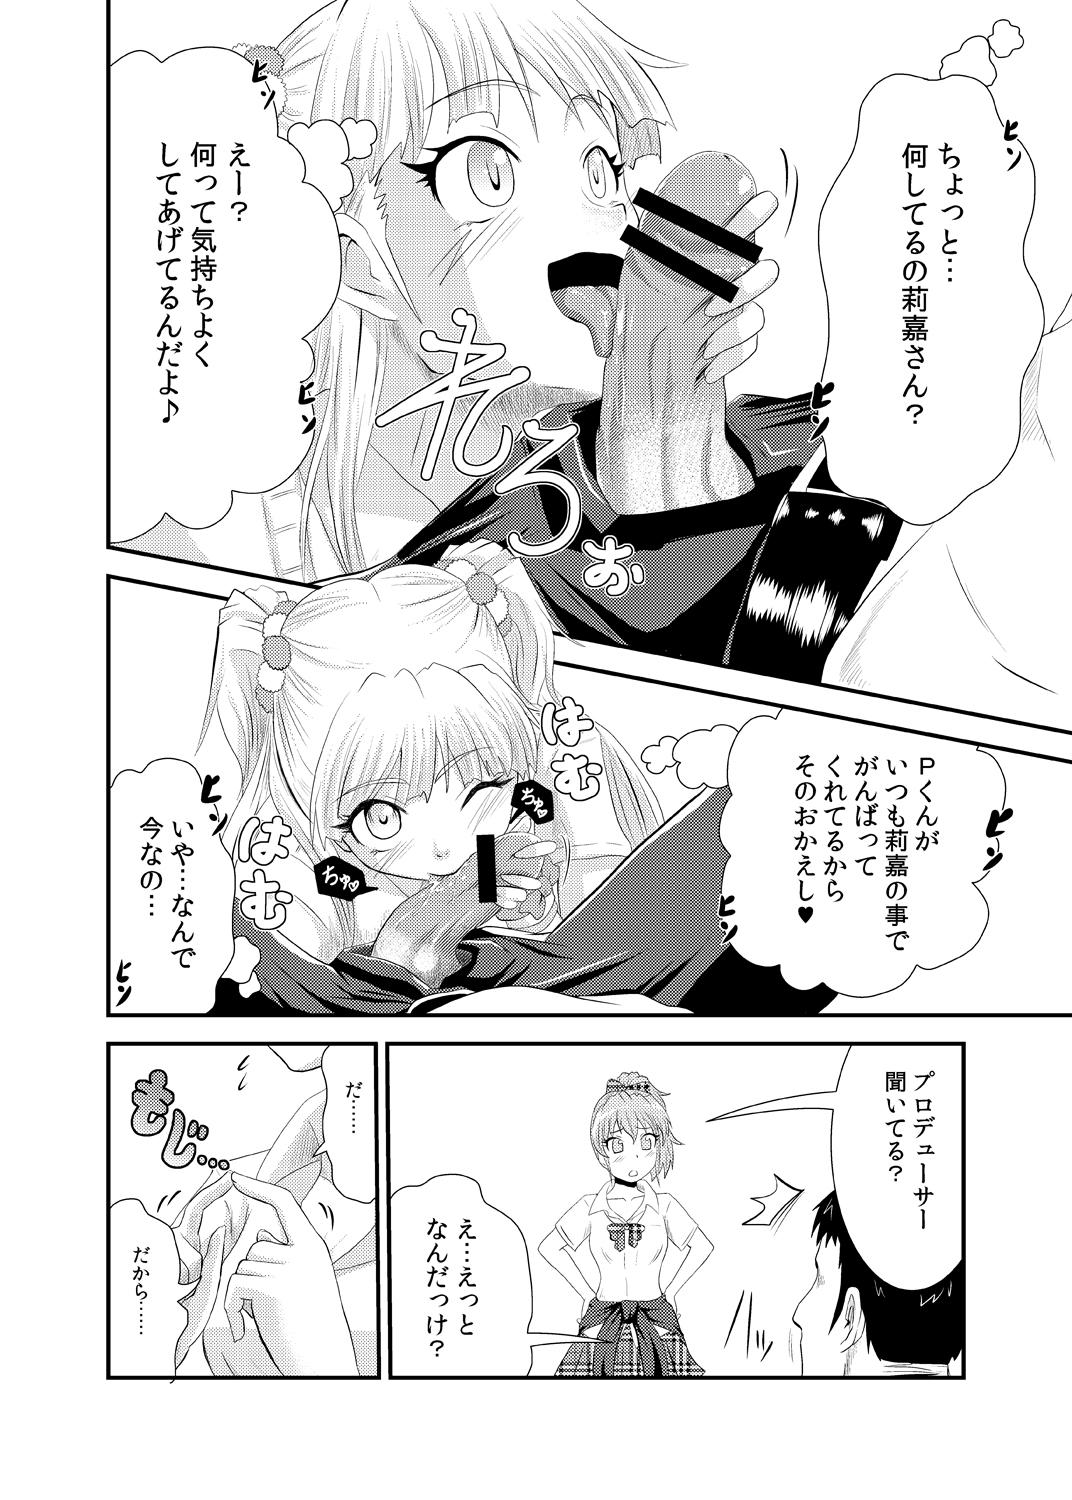 Groupfuck Rika-san no Manga. - The idolmaster Femboy - Page 4